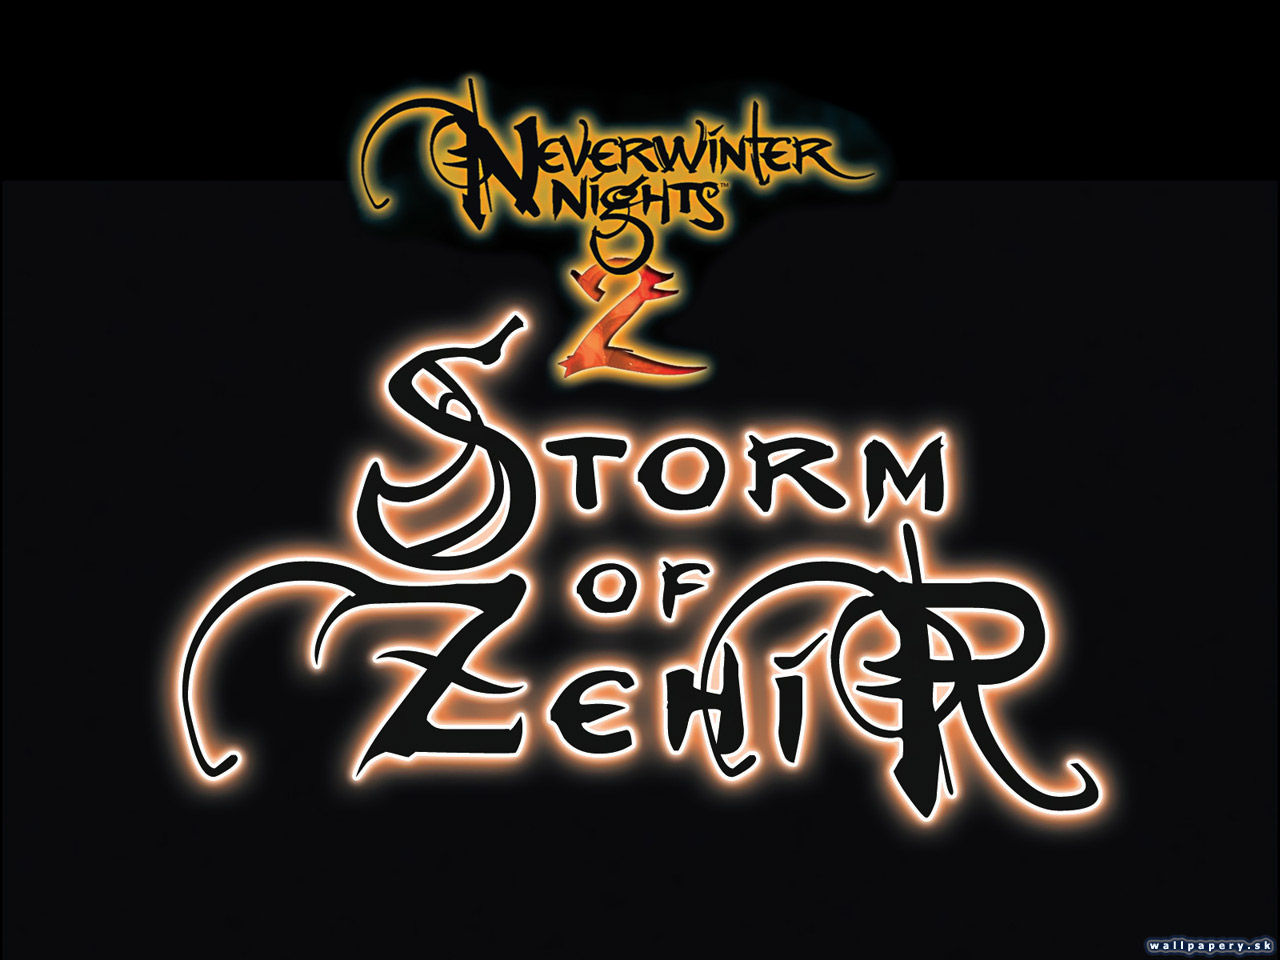 Neverwinter Nights 2: Storm of Zehir - wallpaper 3